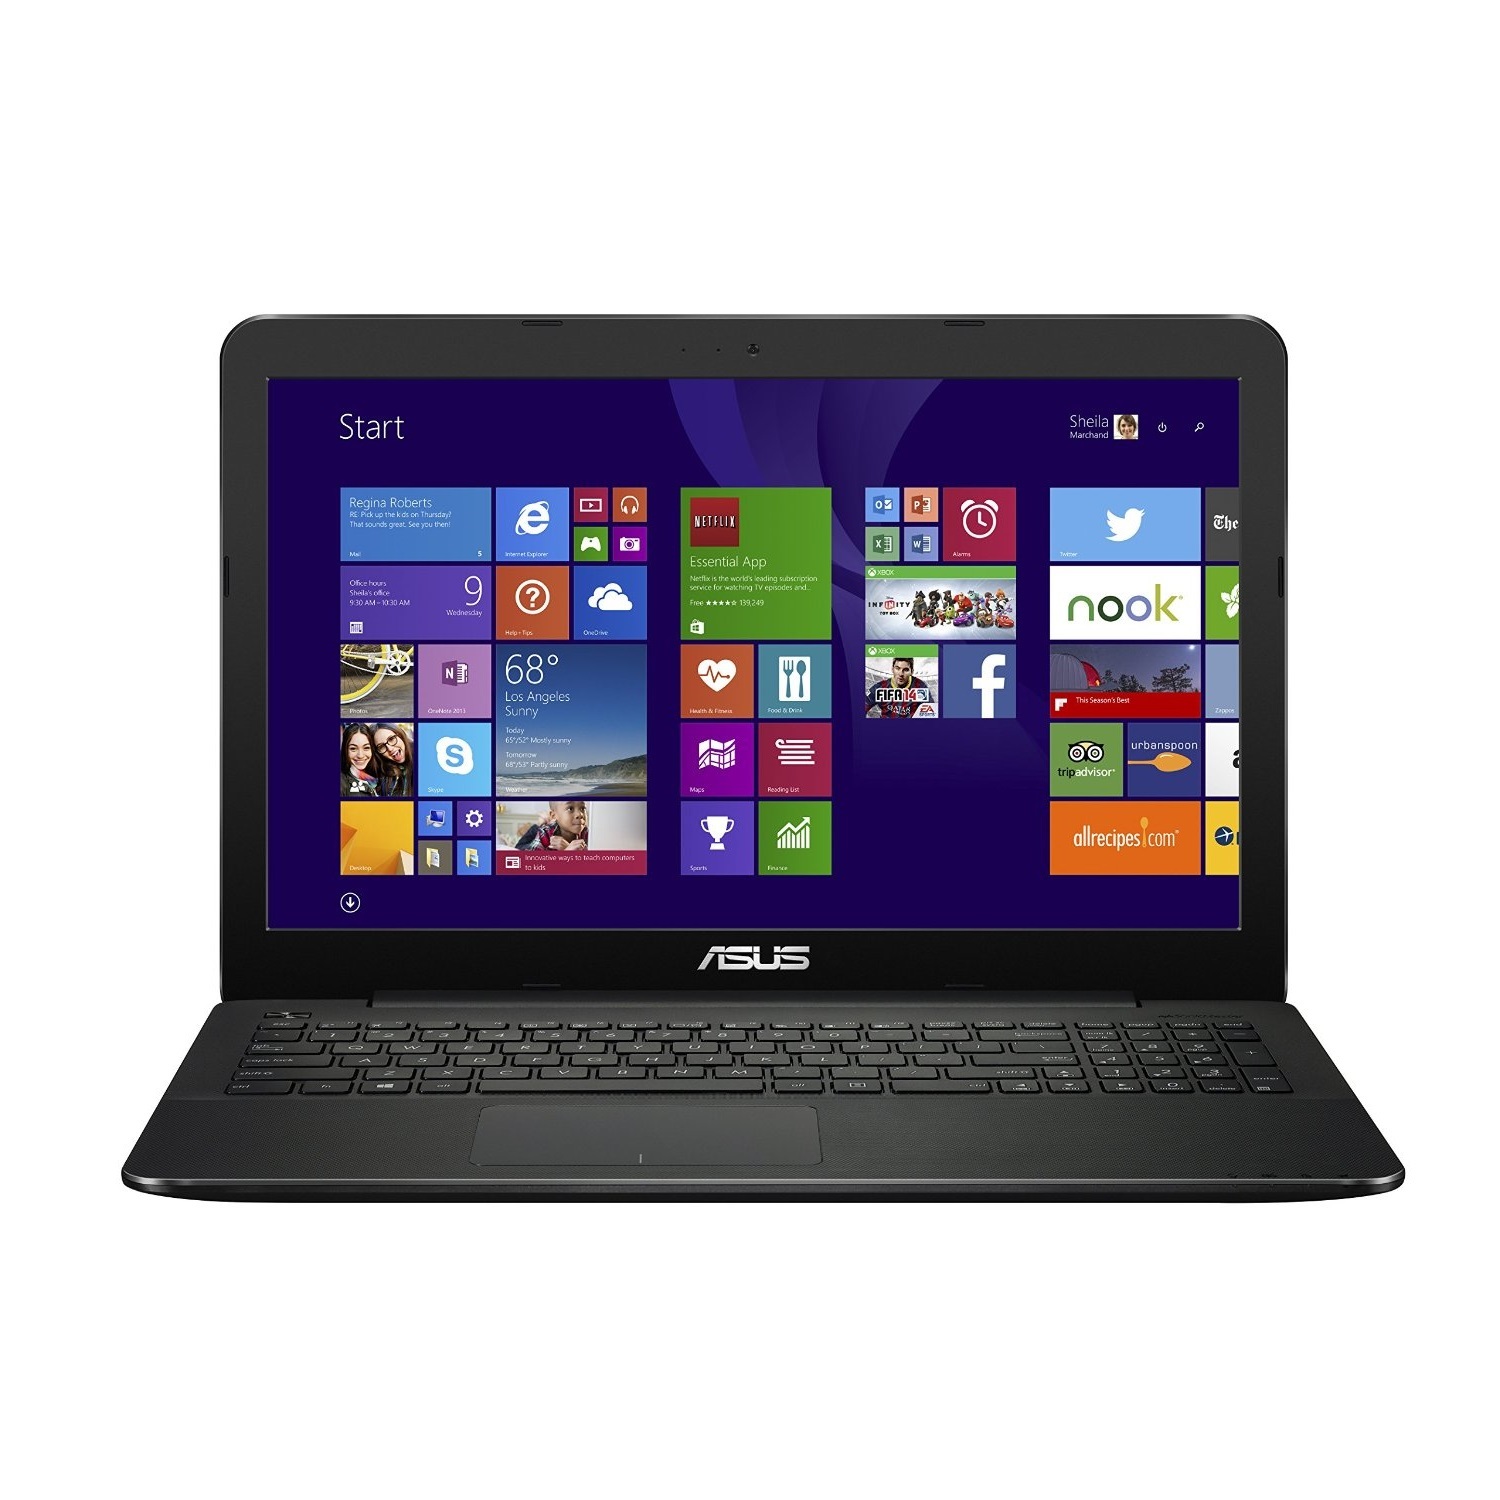 Laptop Asus X554LA-XX641D - Intel Core i3-4030U 1.9GHz, 4GB RAM, 500GB HDD